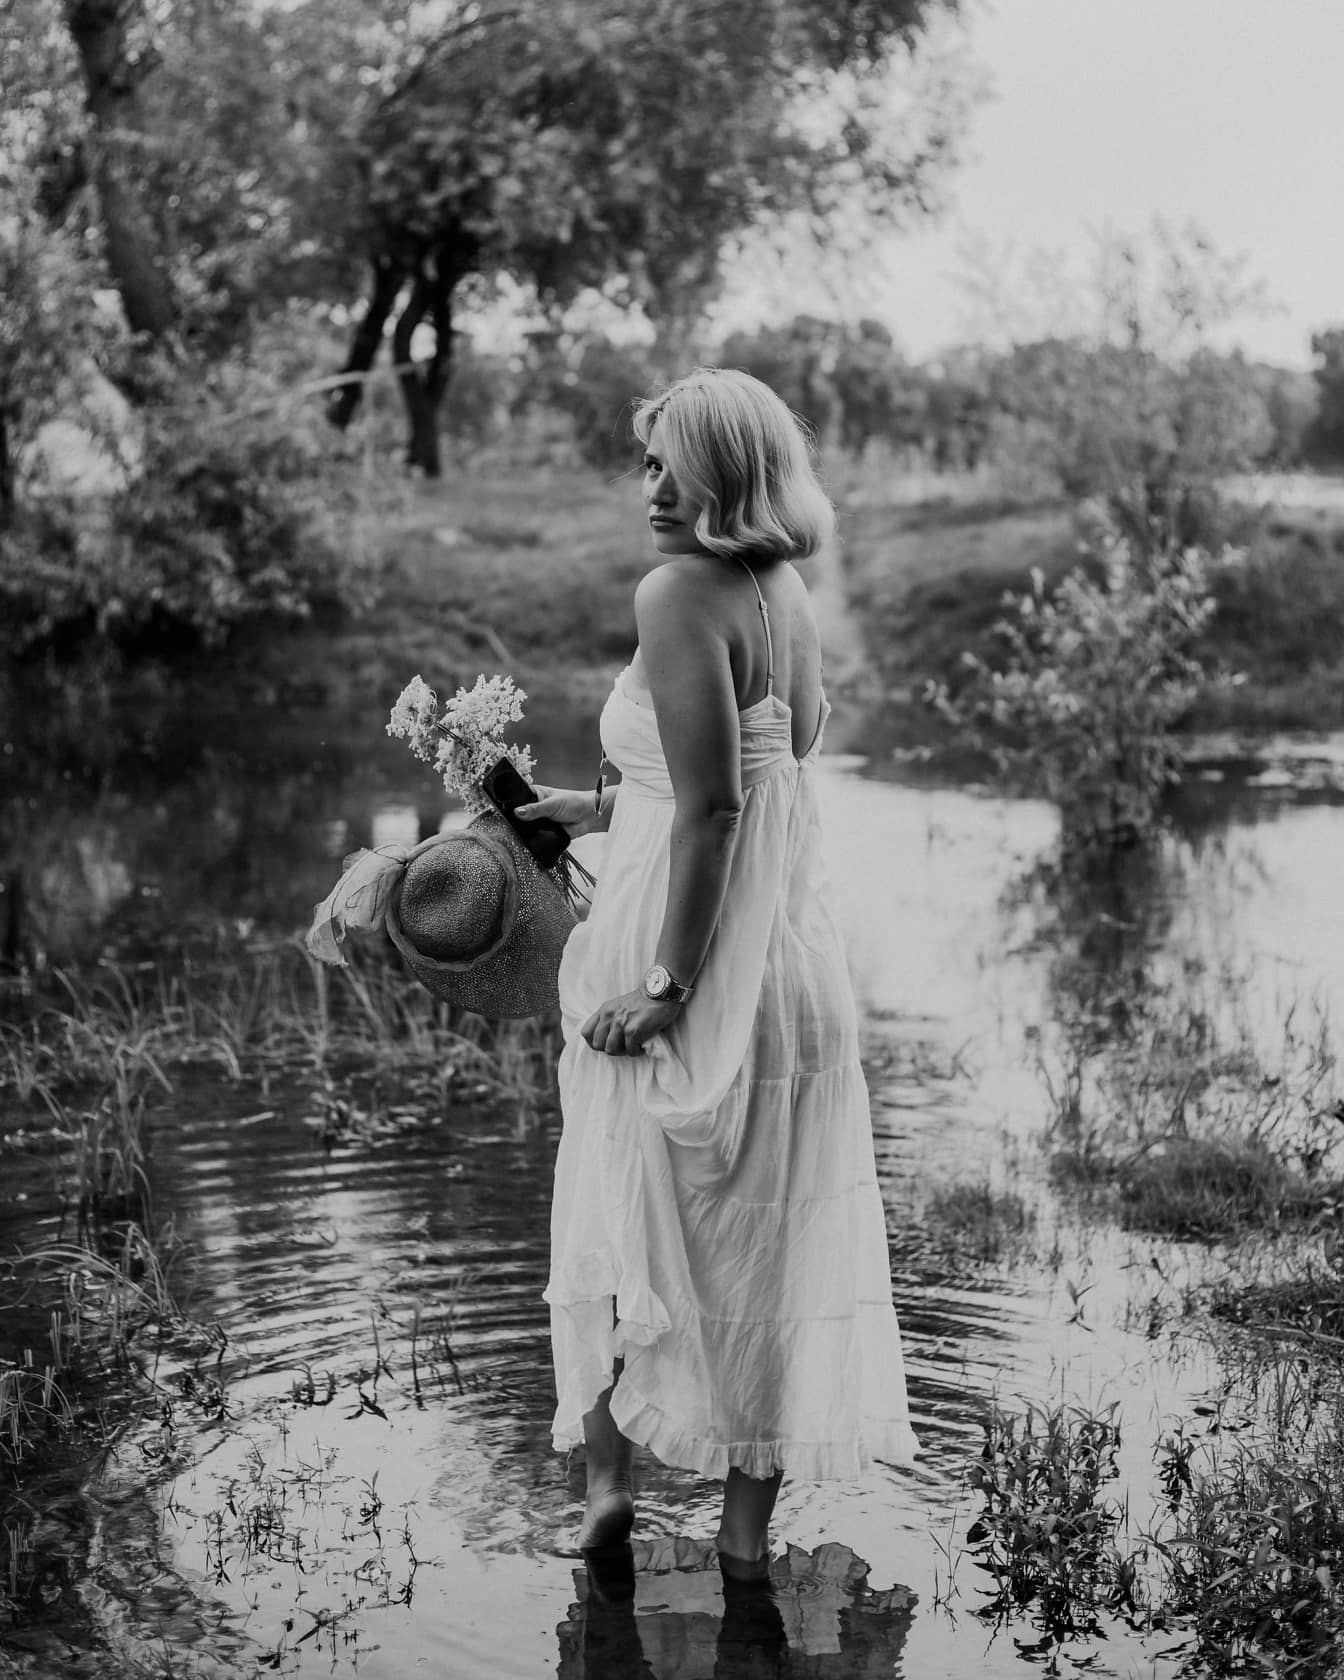 Монохромен портрет на боса блондинка в езеро, облечена в бяла рокля